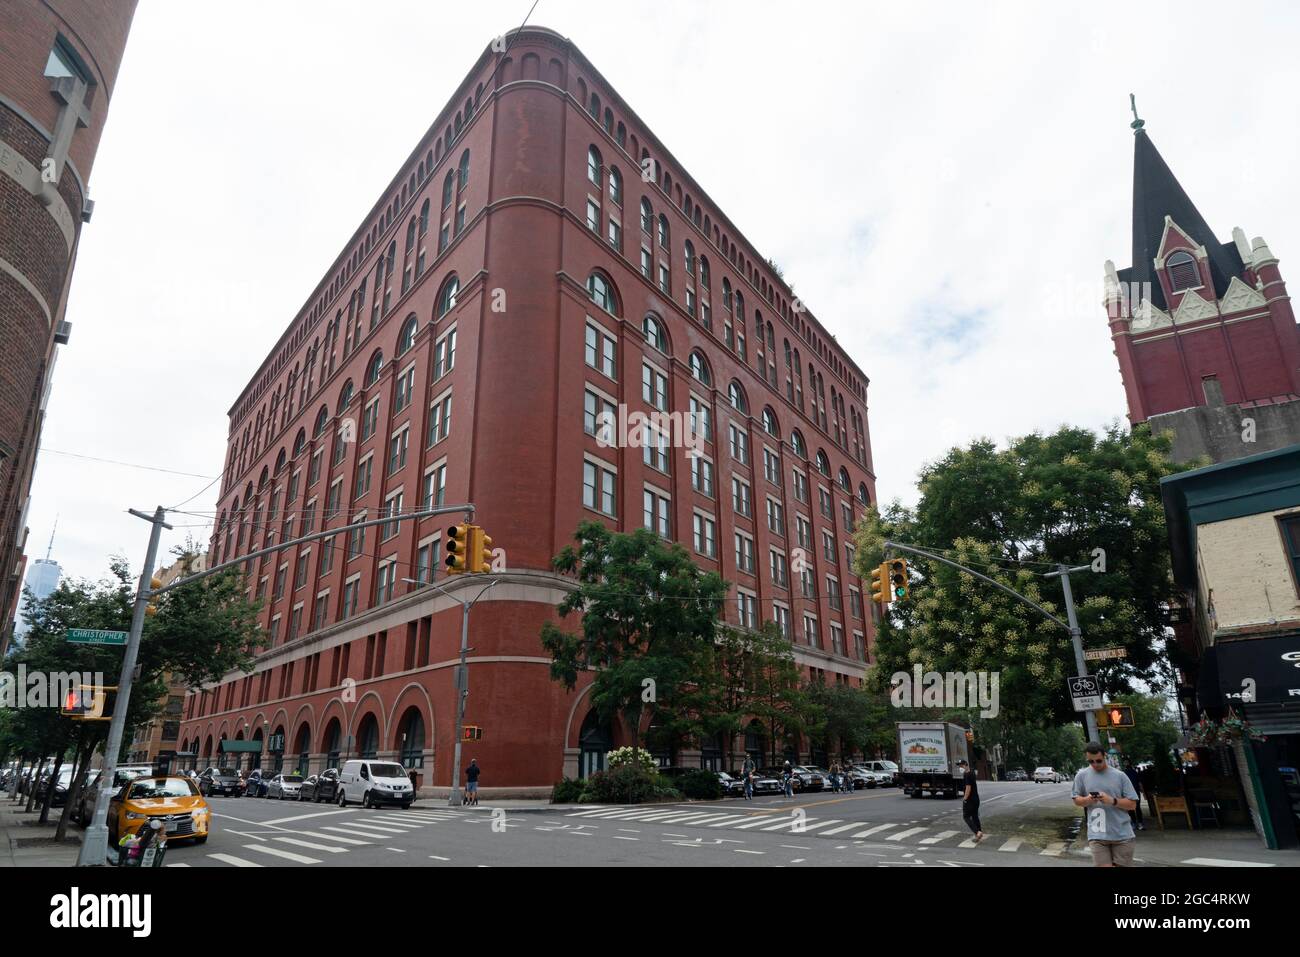 Le bâtiment Archive de 10 étages, qui occupe un pâté de maisons entier dans le Greenwich Village de Manhattan, est inscrit au registre national des lieux historiques. Banque D'Images